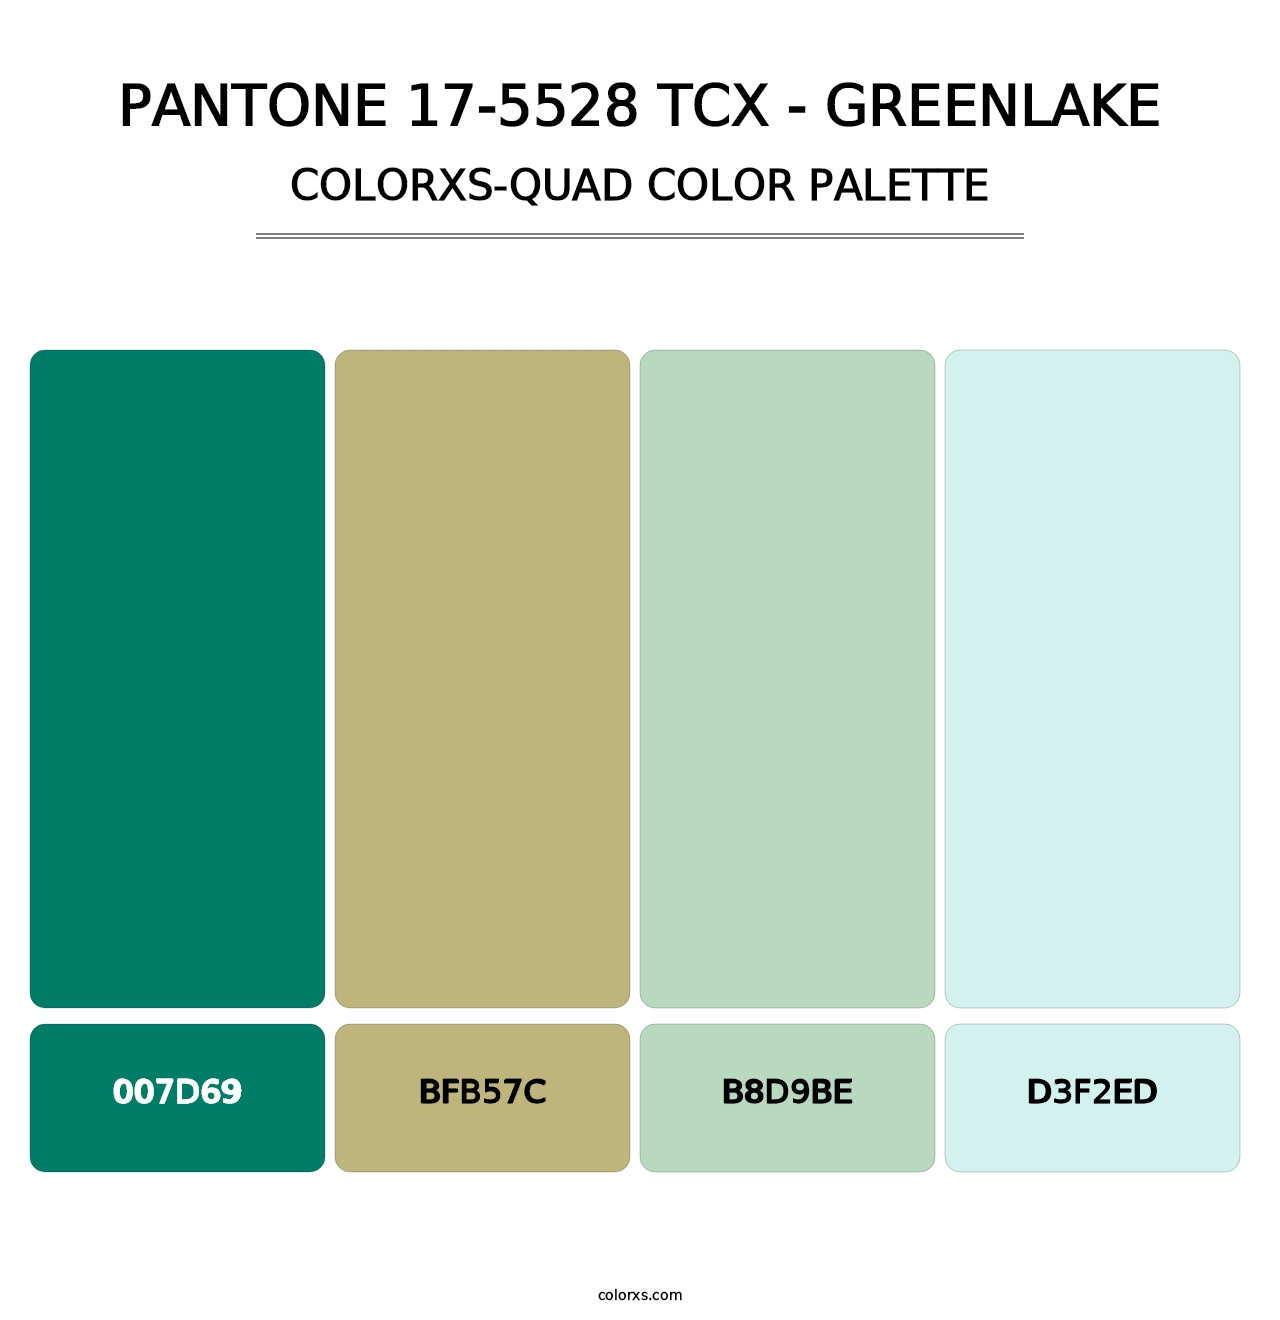 PANTONE 17-5528 TCX - Greenlake - Colorxs Quad Palette